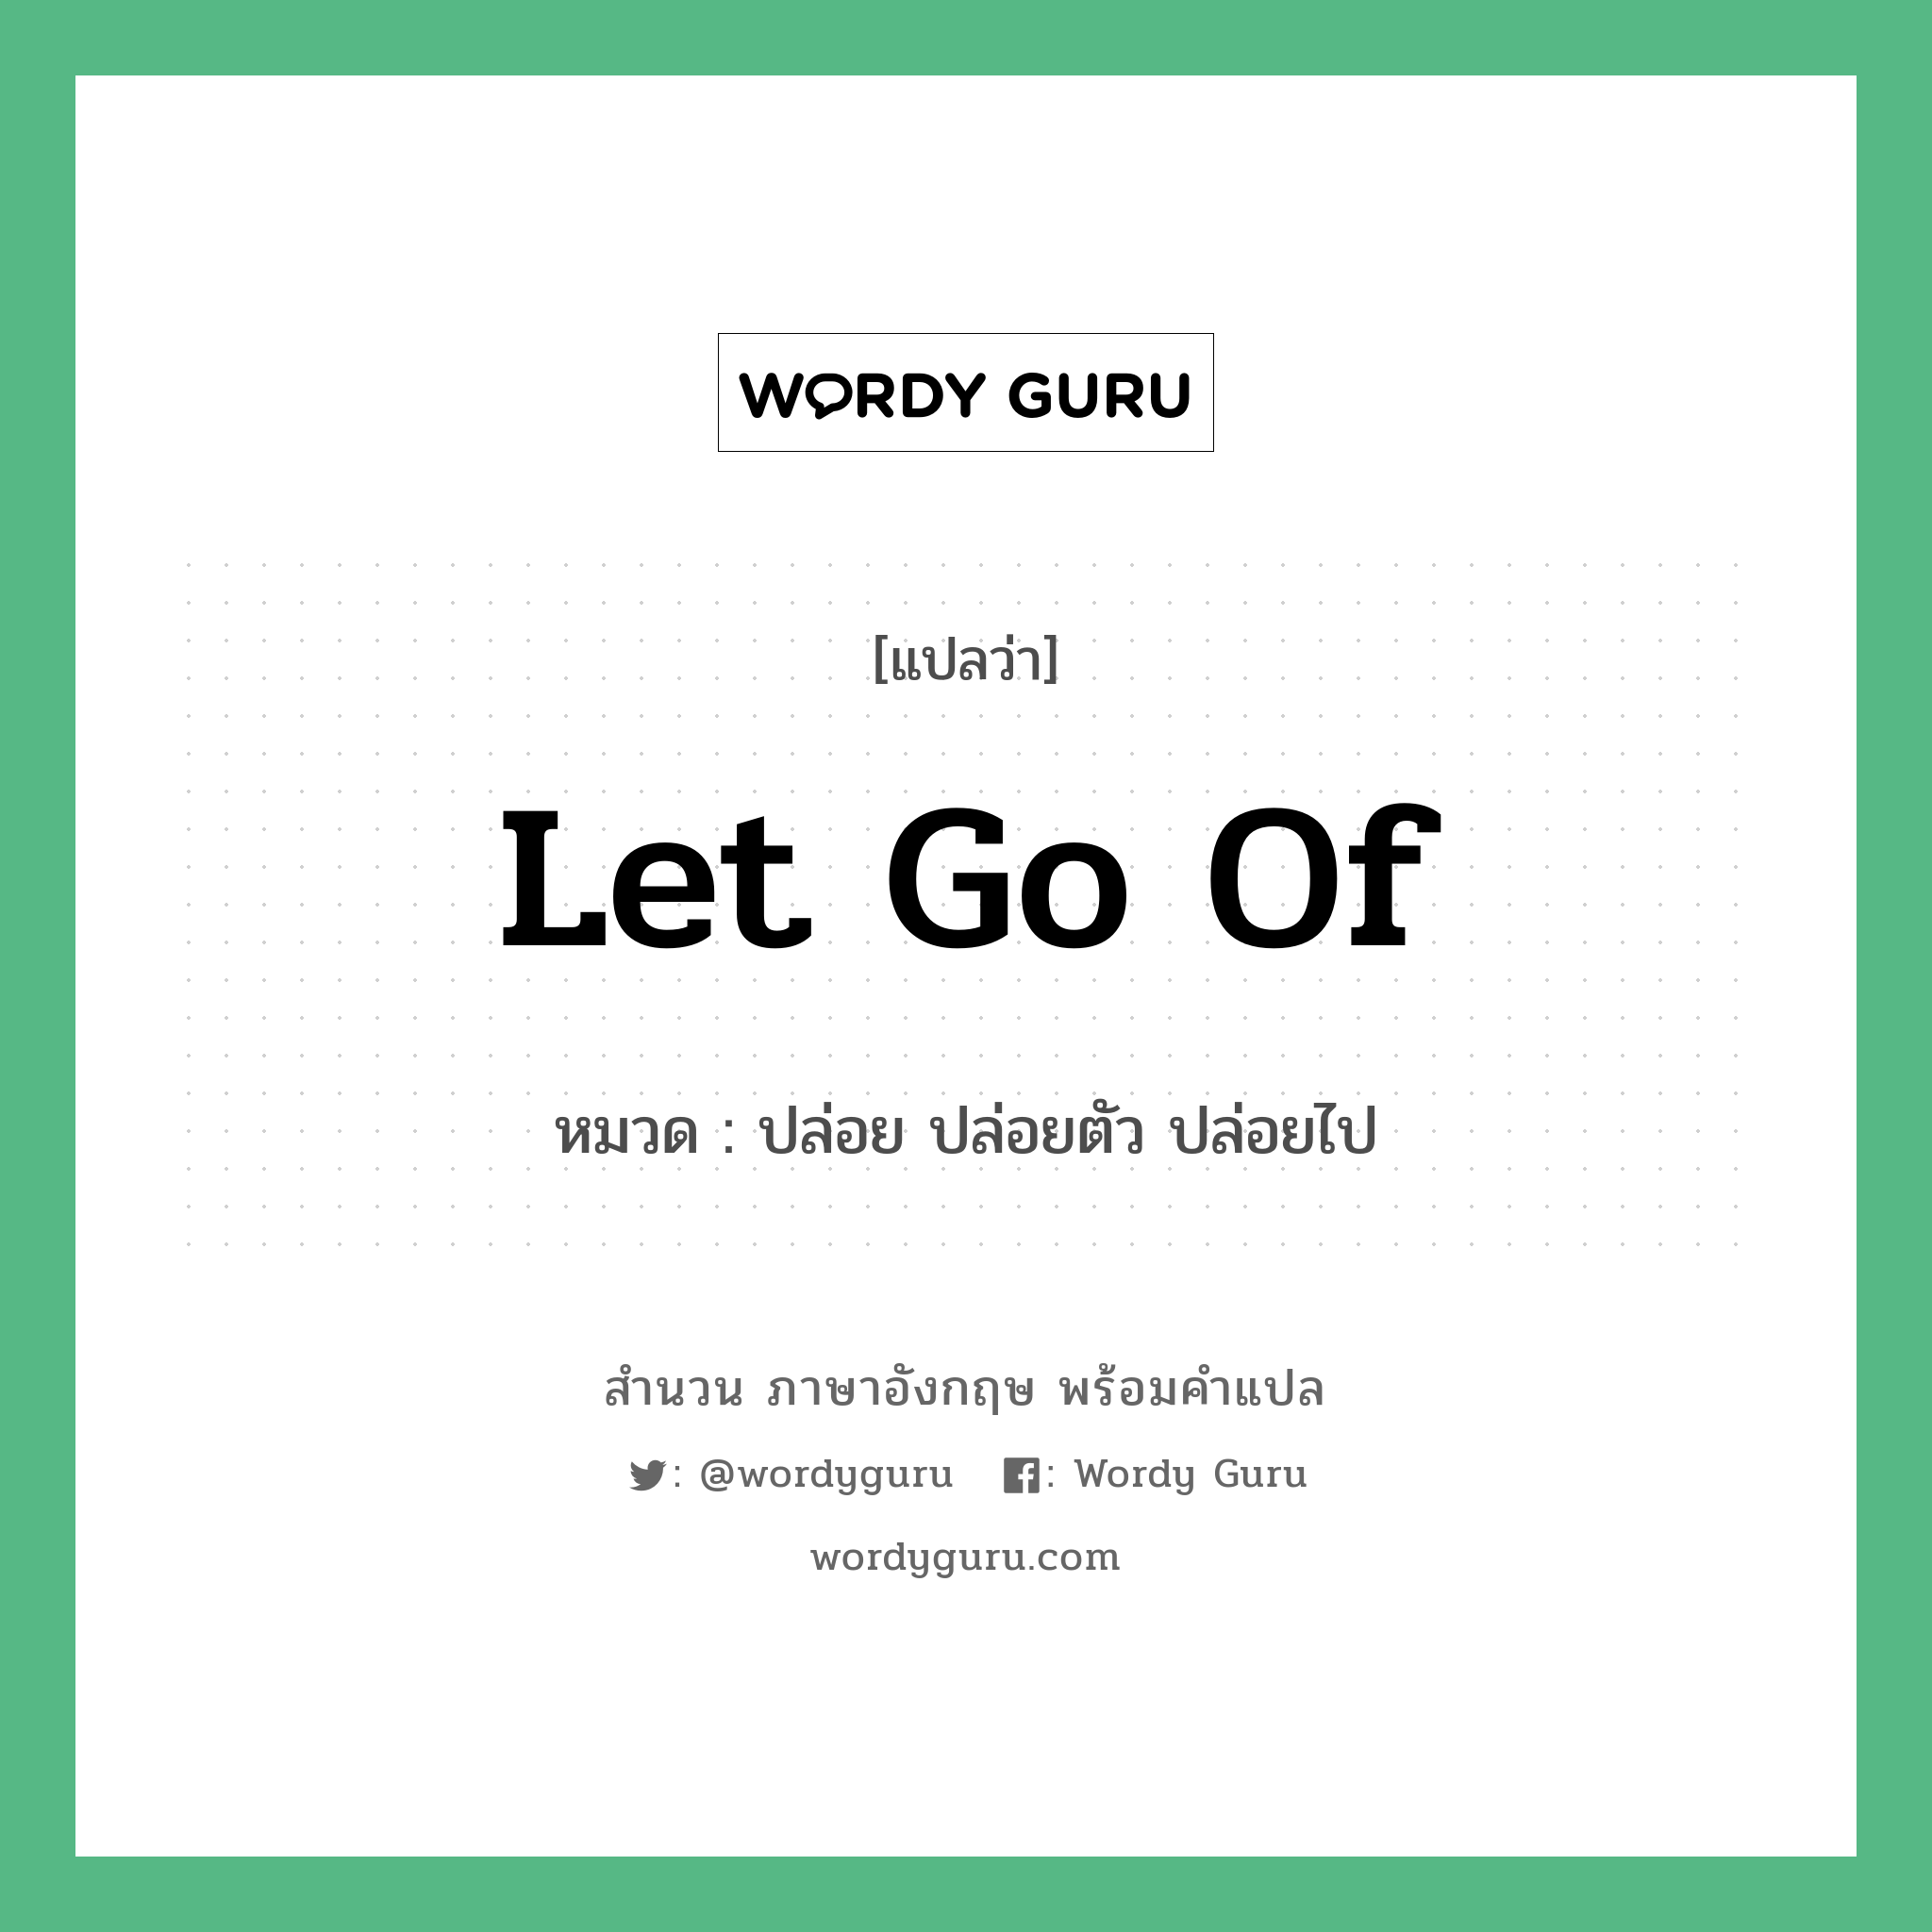 Let go of แปลว่า?, สำนวนภาษาอังกฤษ Let go of หมวด ปล่อย ปล่อยตัว ปล่อยไป